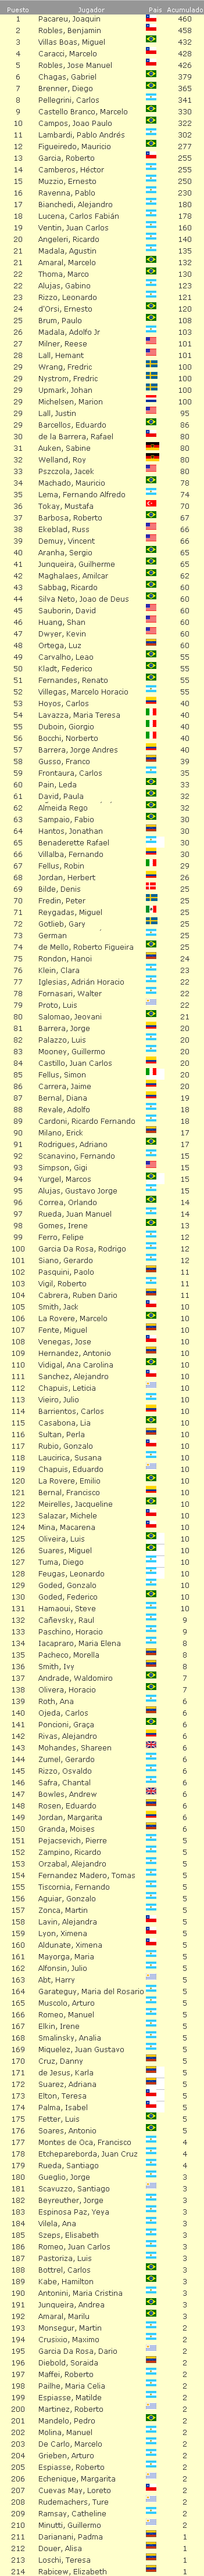 Ranking Sudamericano Libre